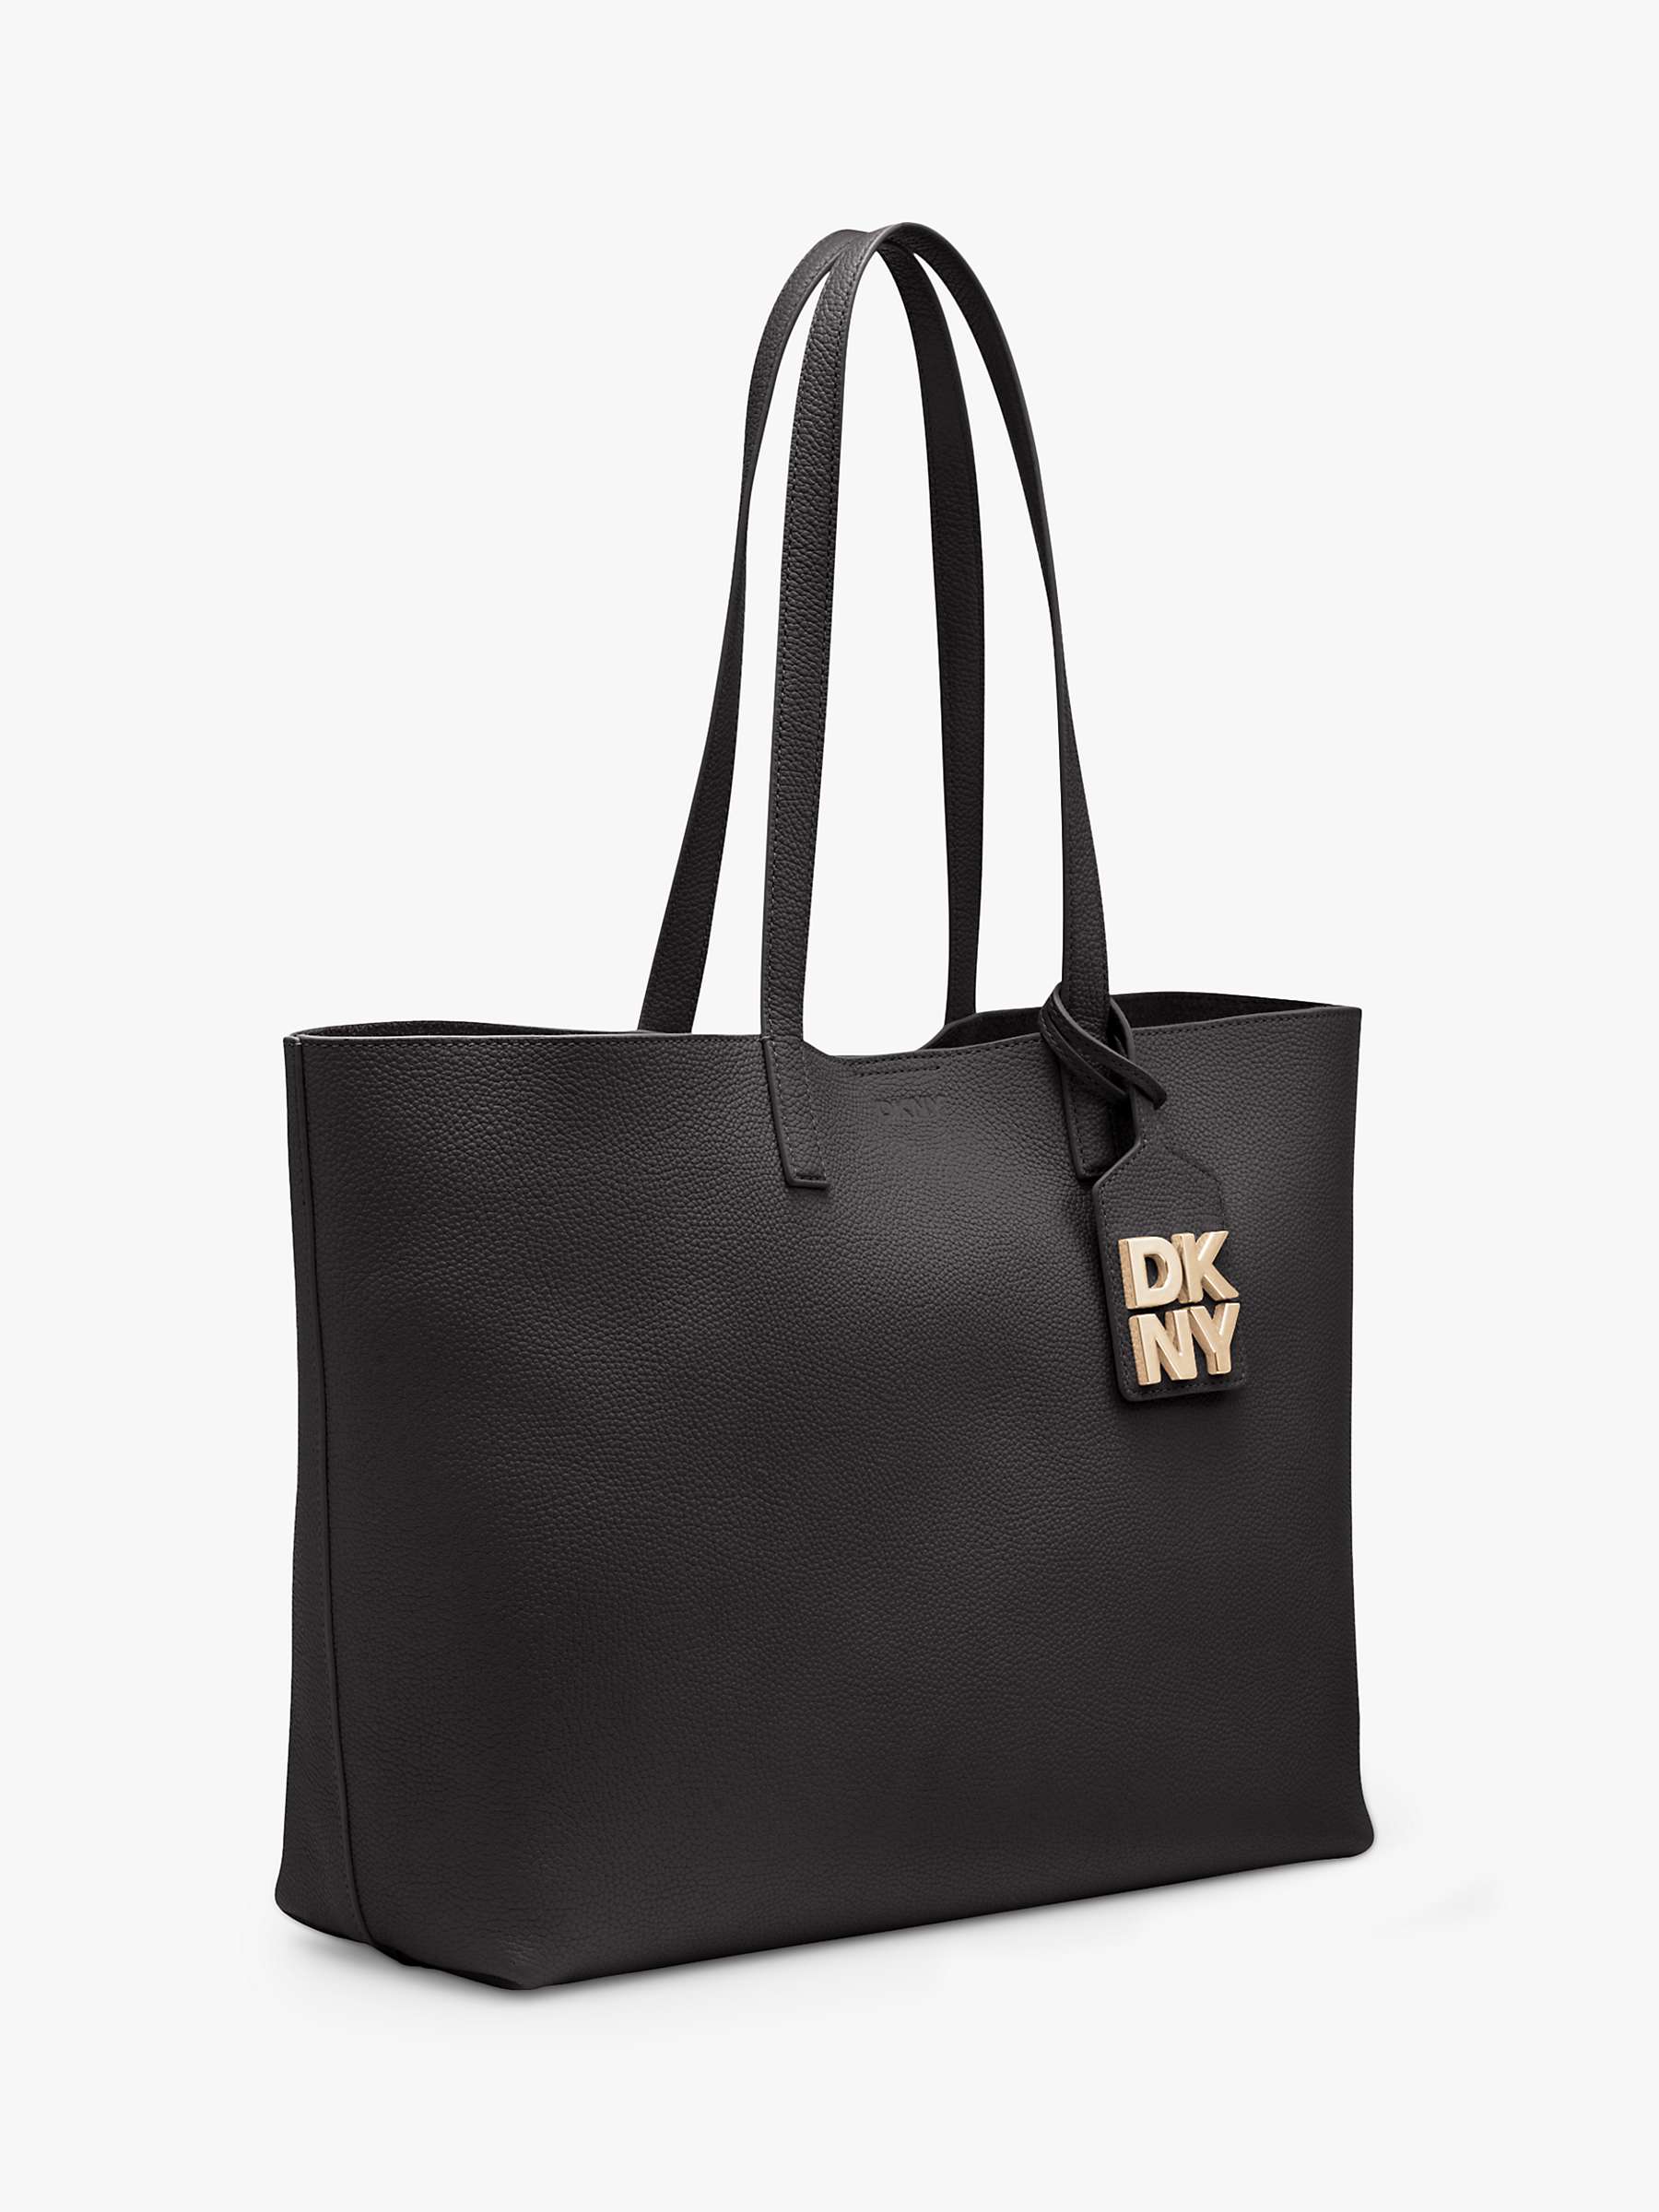 Buy DKNY Park Slope Leather Tote Bag, Black/Gold Online at johnlewis.com